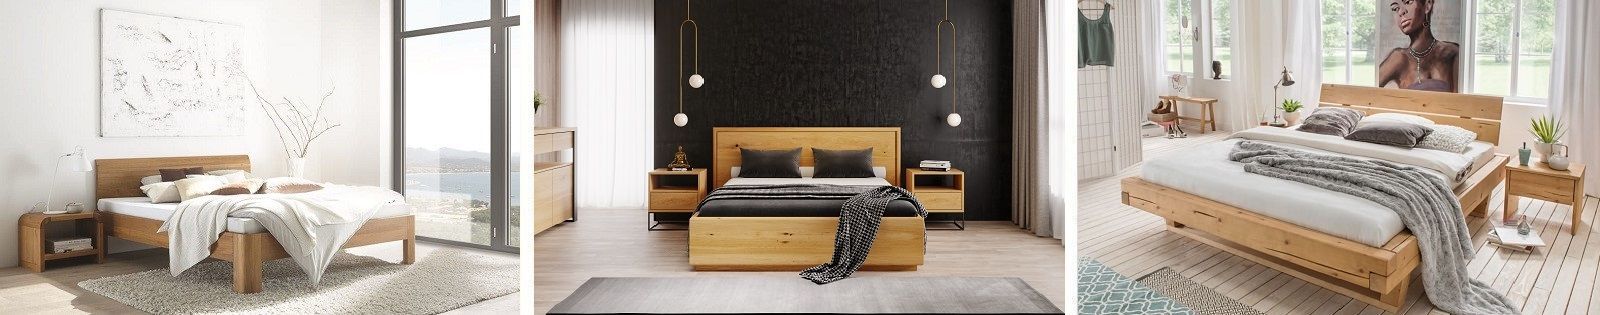 Meuble de chambre en bois massif - Hêtre, chêne, merisier, noyer - Le monde du lit